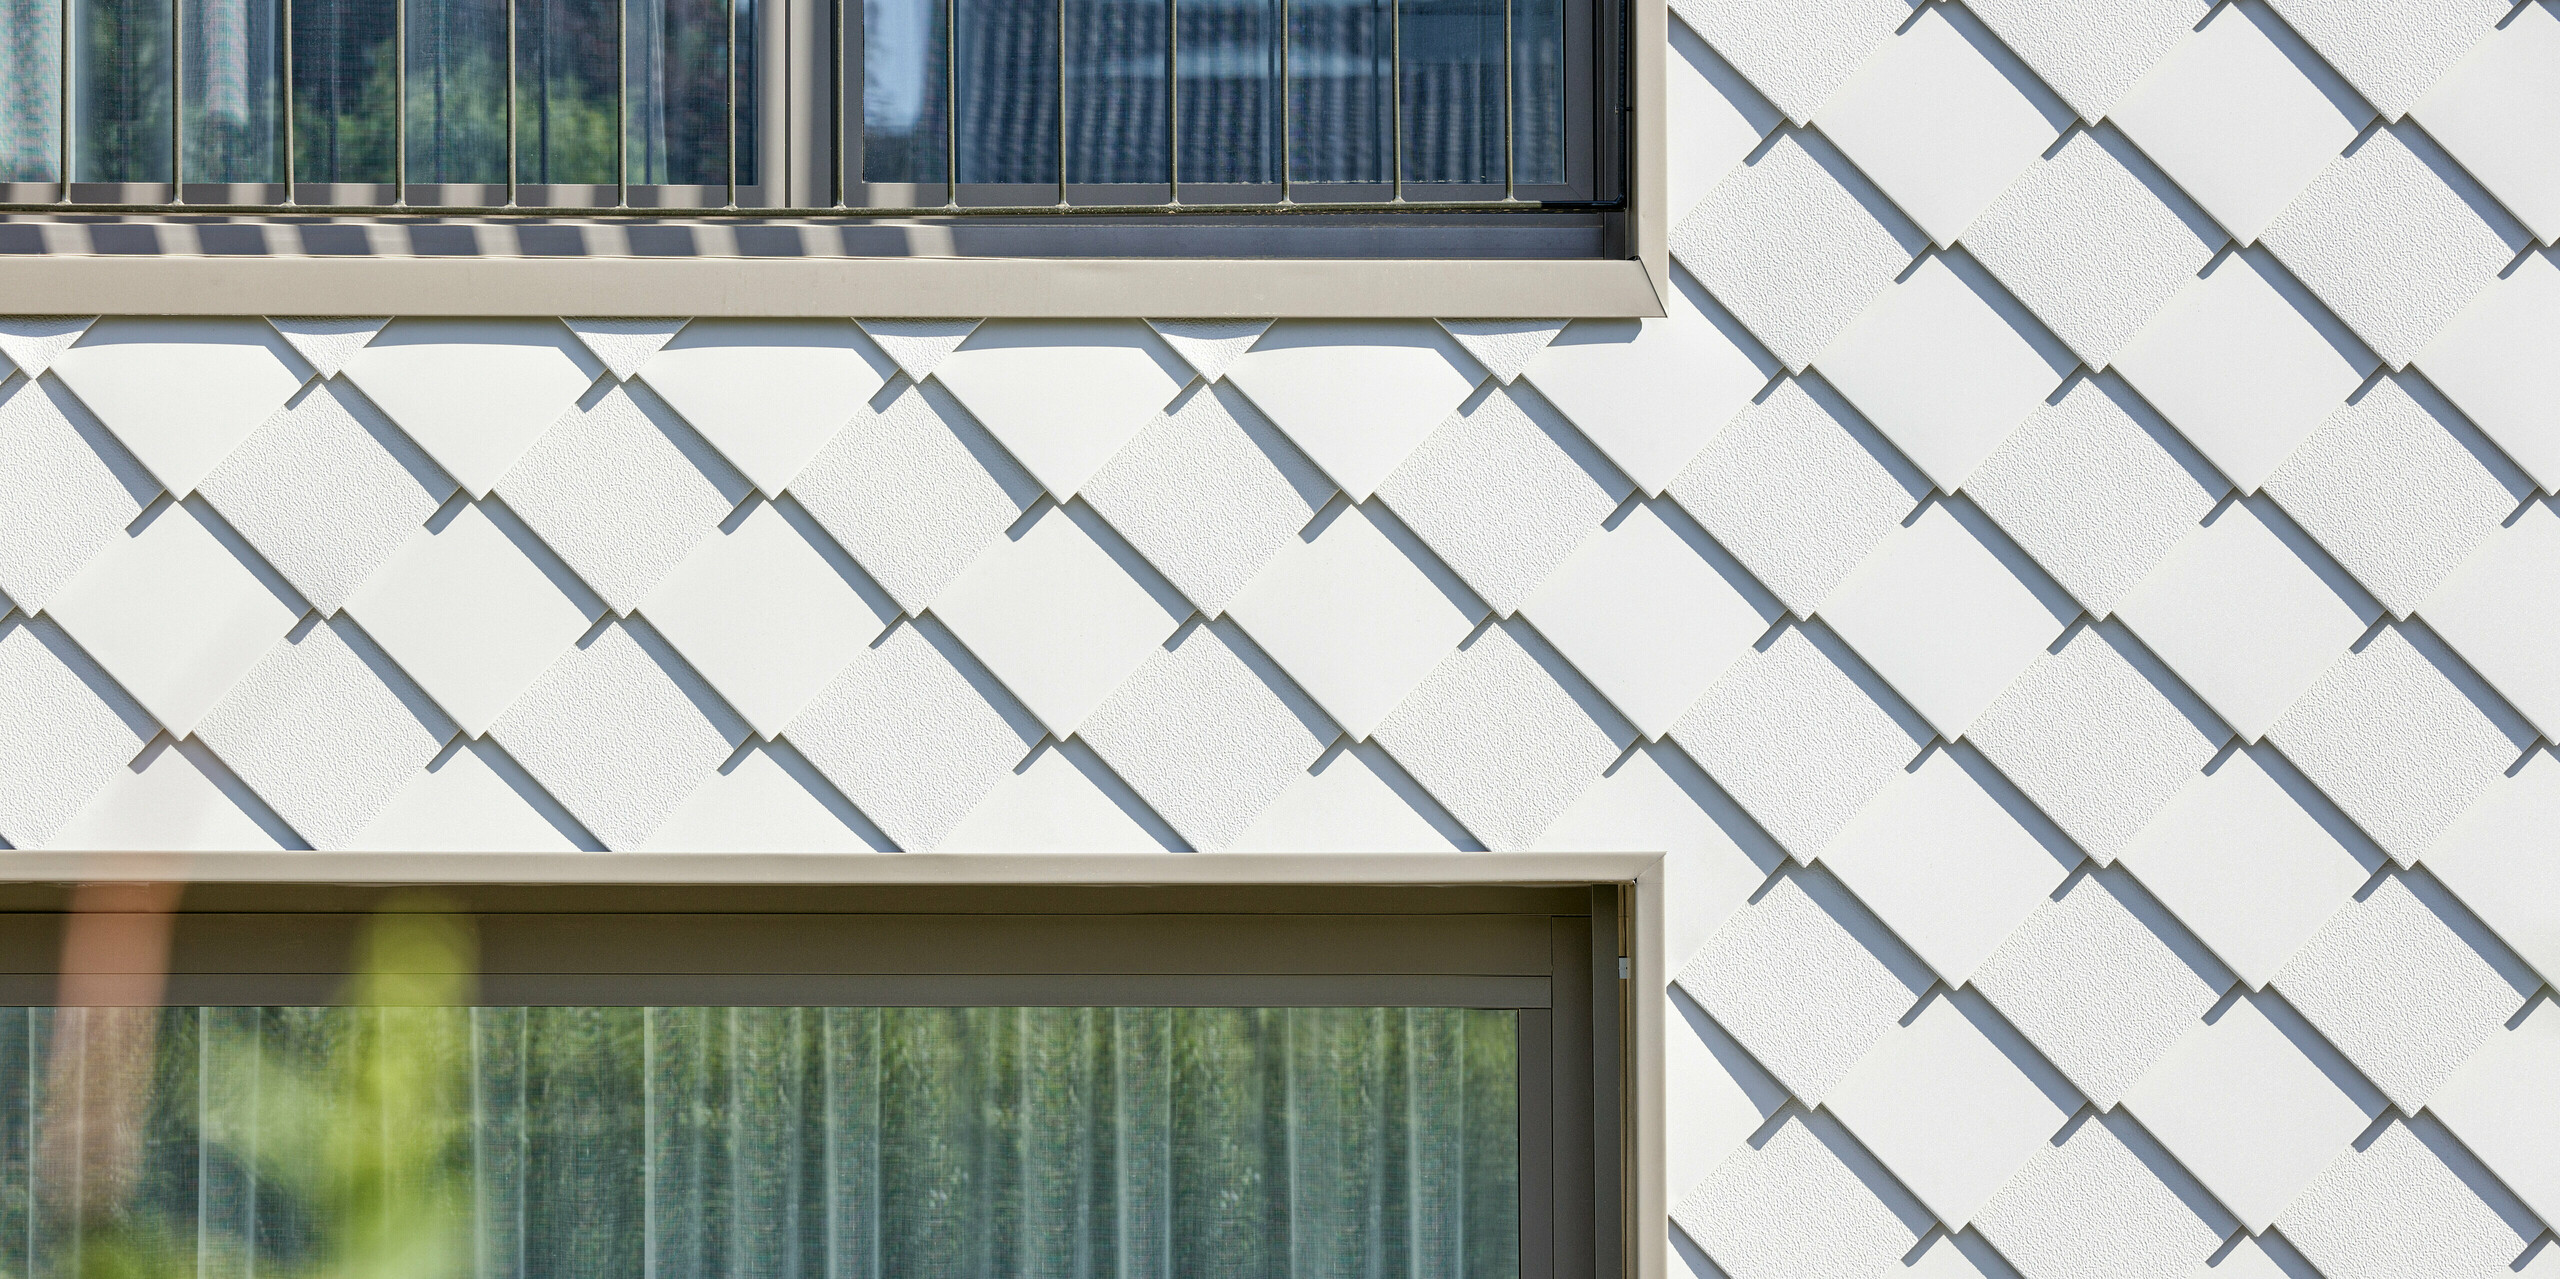 Detailansicht der modernen Fassadengestaltung eines Mehrfamilienhauses in Wiesendangen, CH. Die Gebäudehülle besteht aus PREFA Wandrauten 20x20 in P.10 Prefaweiß, die strukturierte Eleganz und zeitgenössisches Design vermitteln. Das Bild zeigt die präzise Montage der Aluminiumrauten, die zwischen zwei Fenstern mit französischem Balkon liegen.